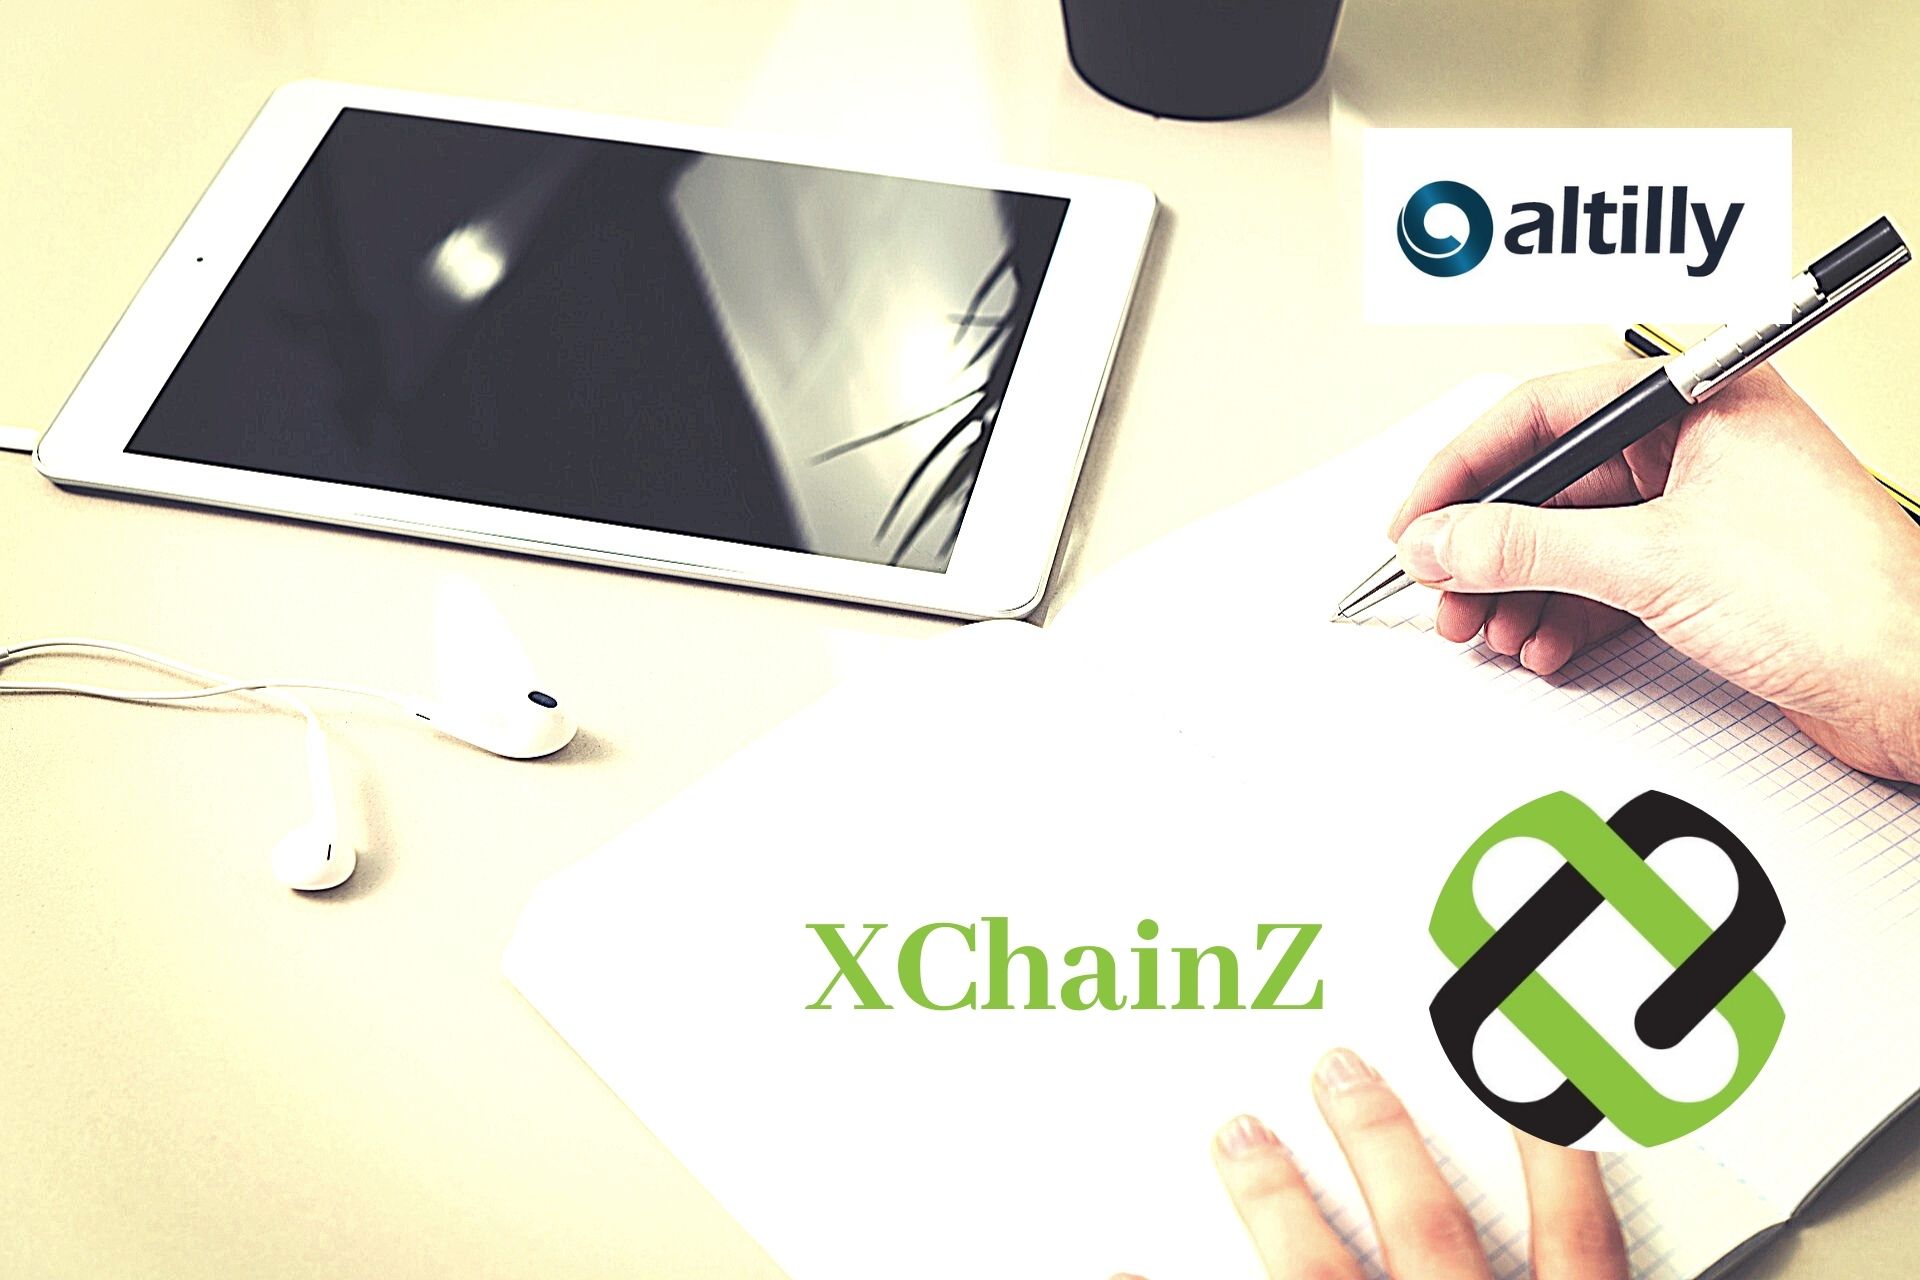 XChainZ educational platform